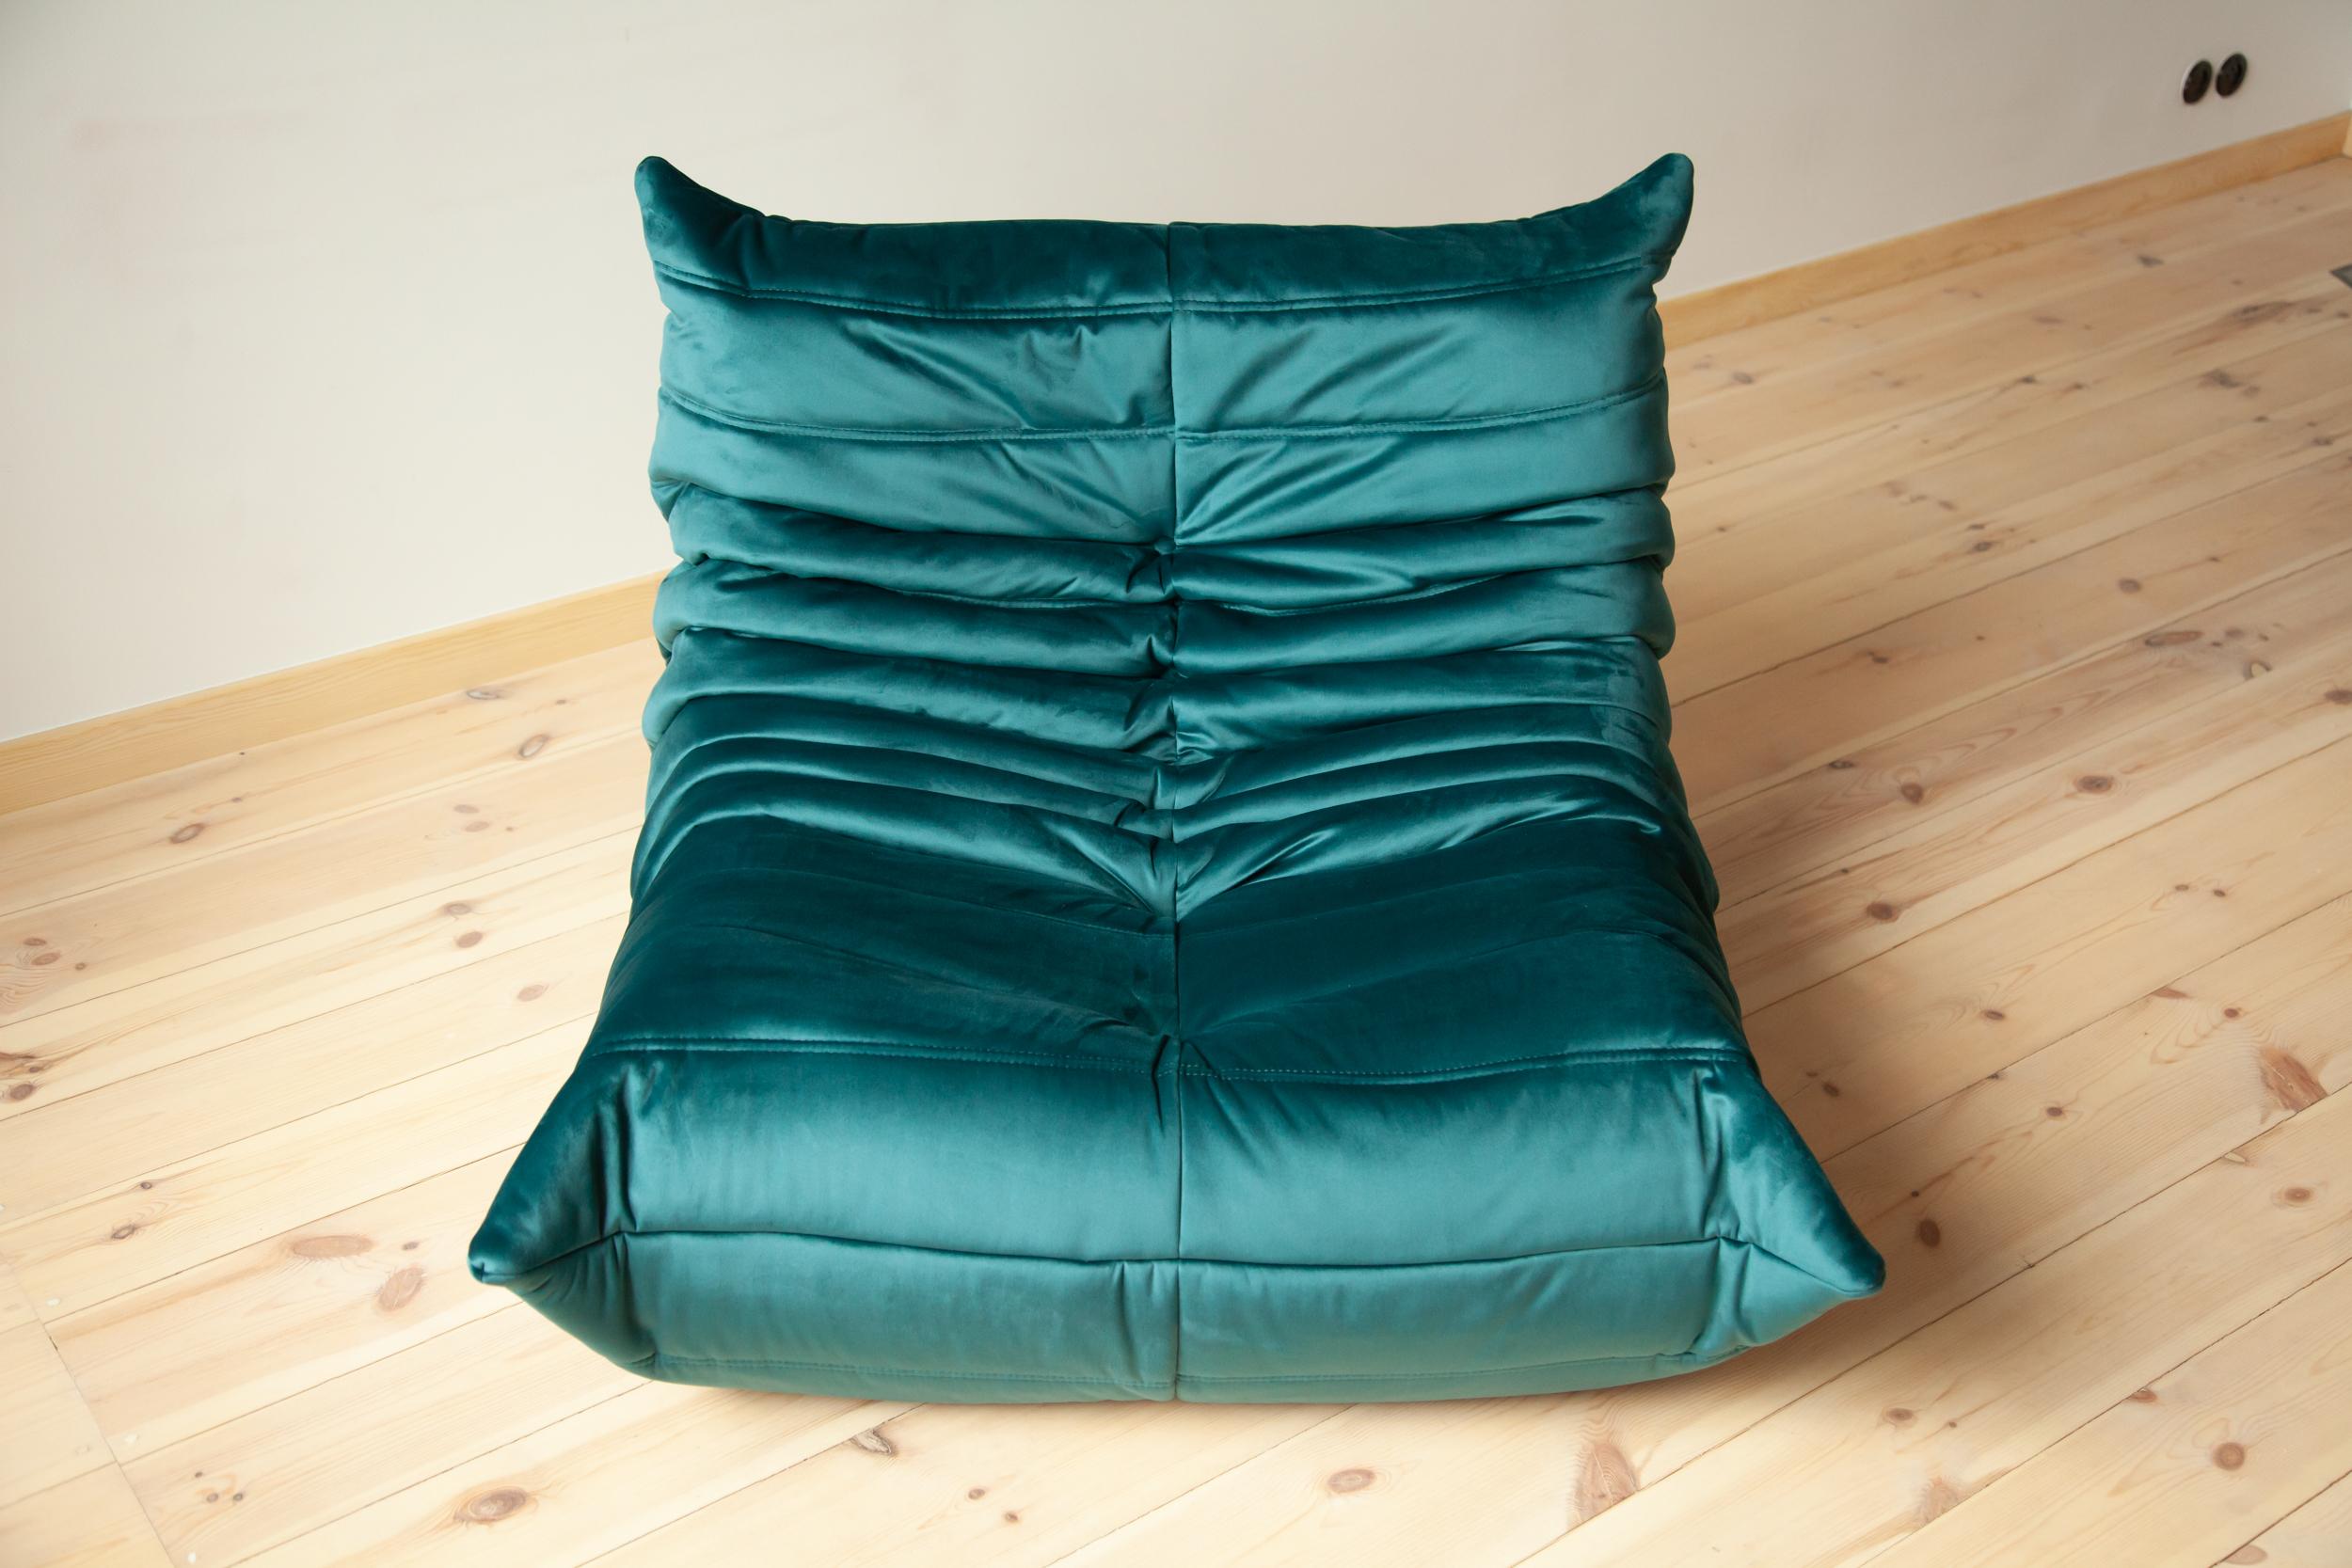 Togo Longue Chair in Blue-Green Velvet by Michel Ducaroy, Ligne Roset For Sale 4